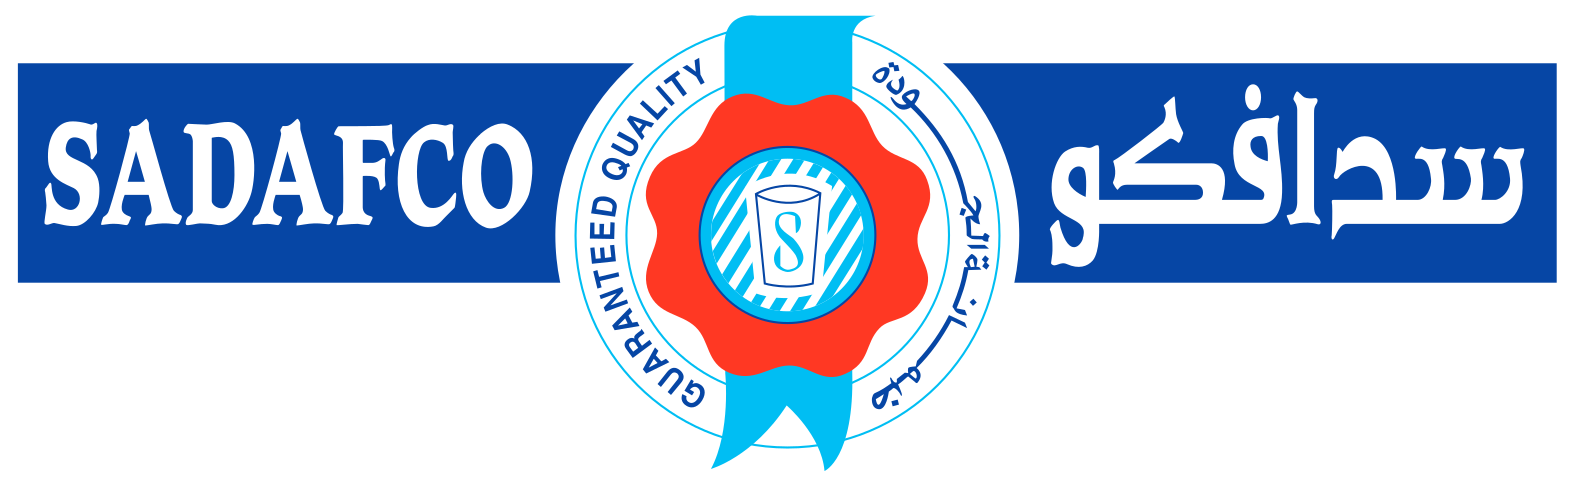 Saudia Dairy & Foodstuff Company logo large (transparent PNG)